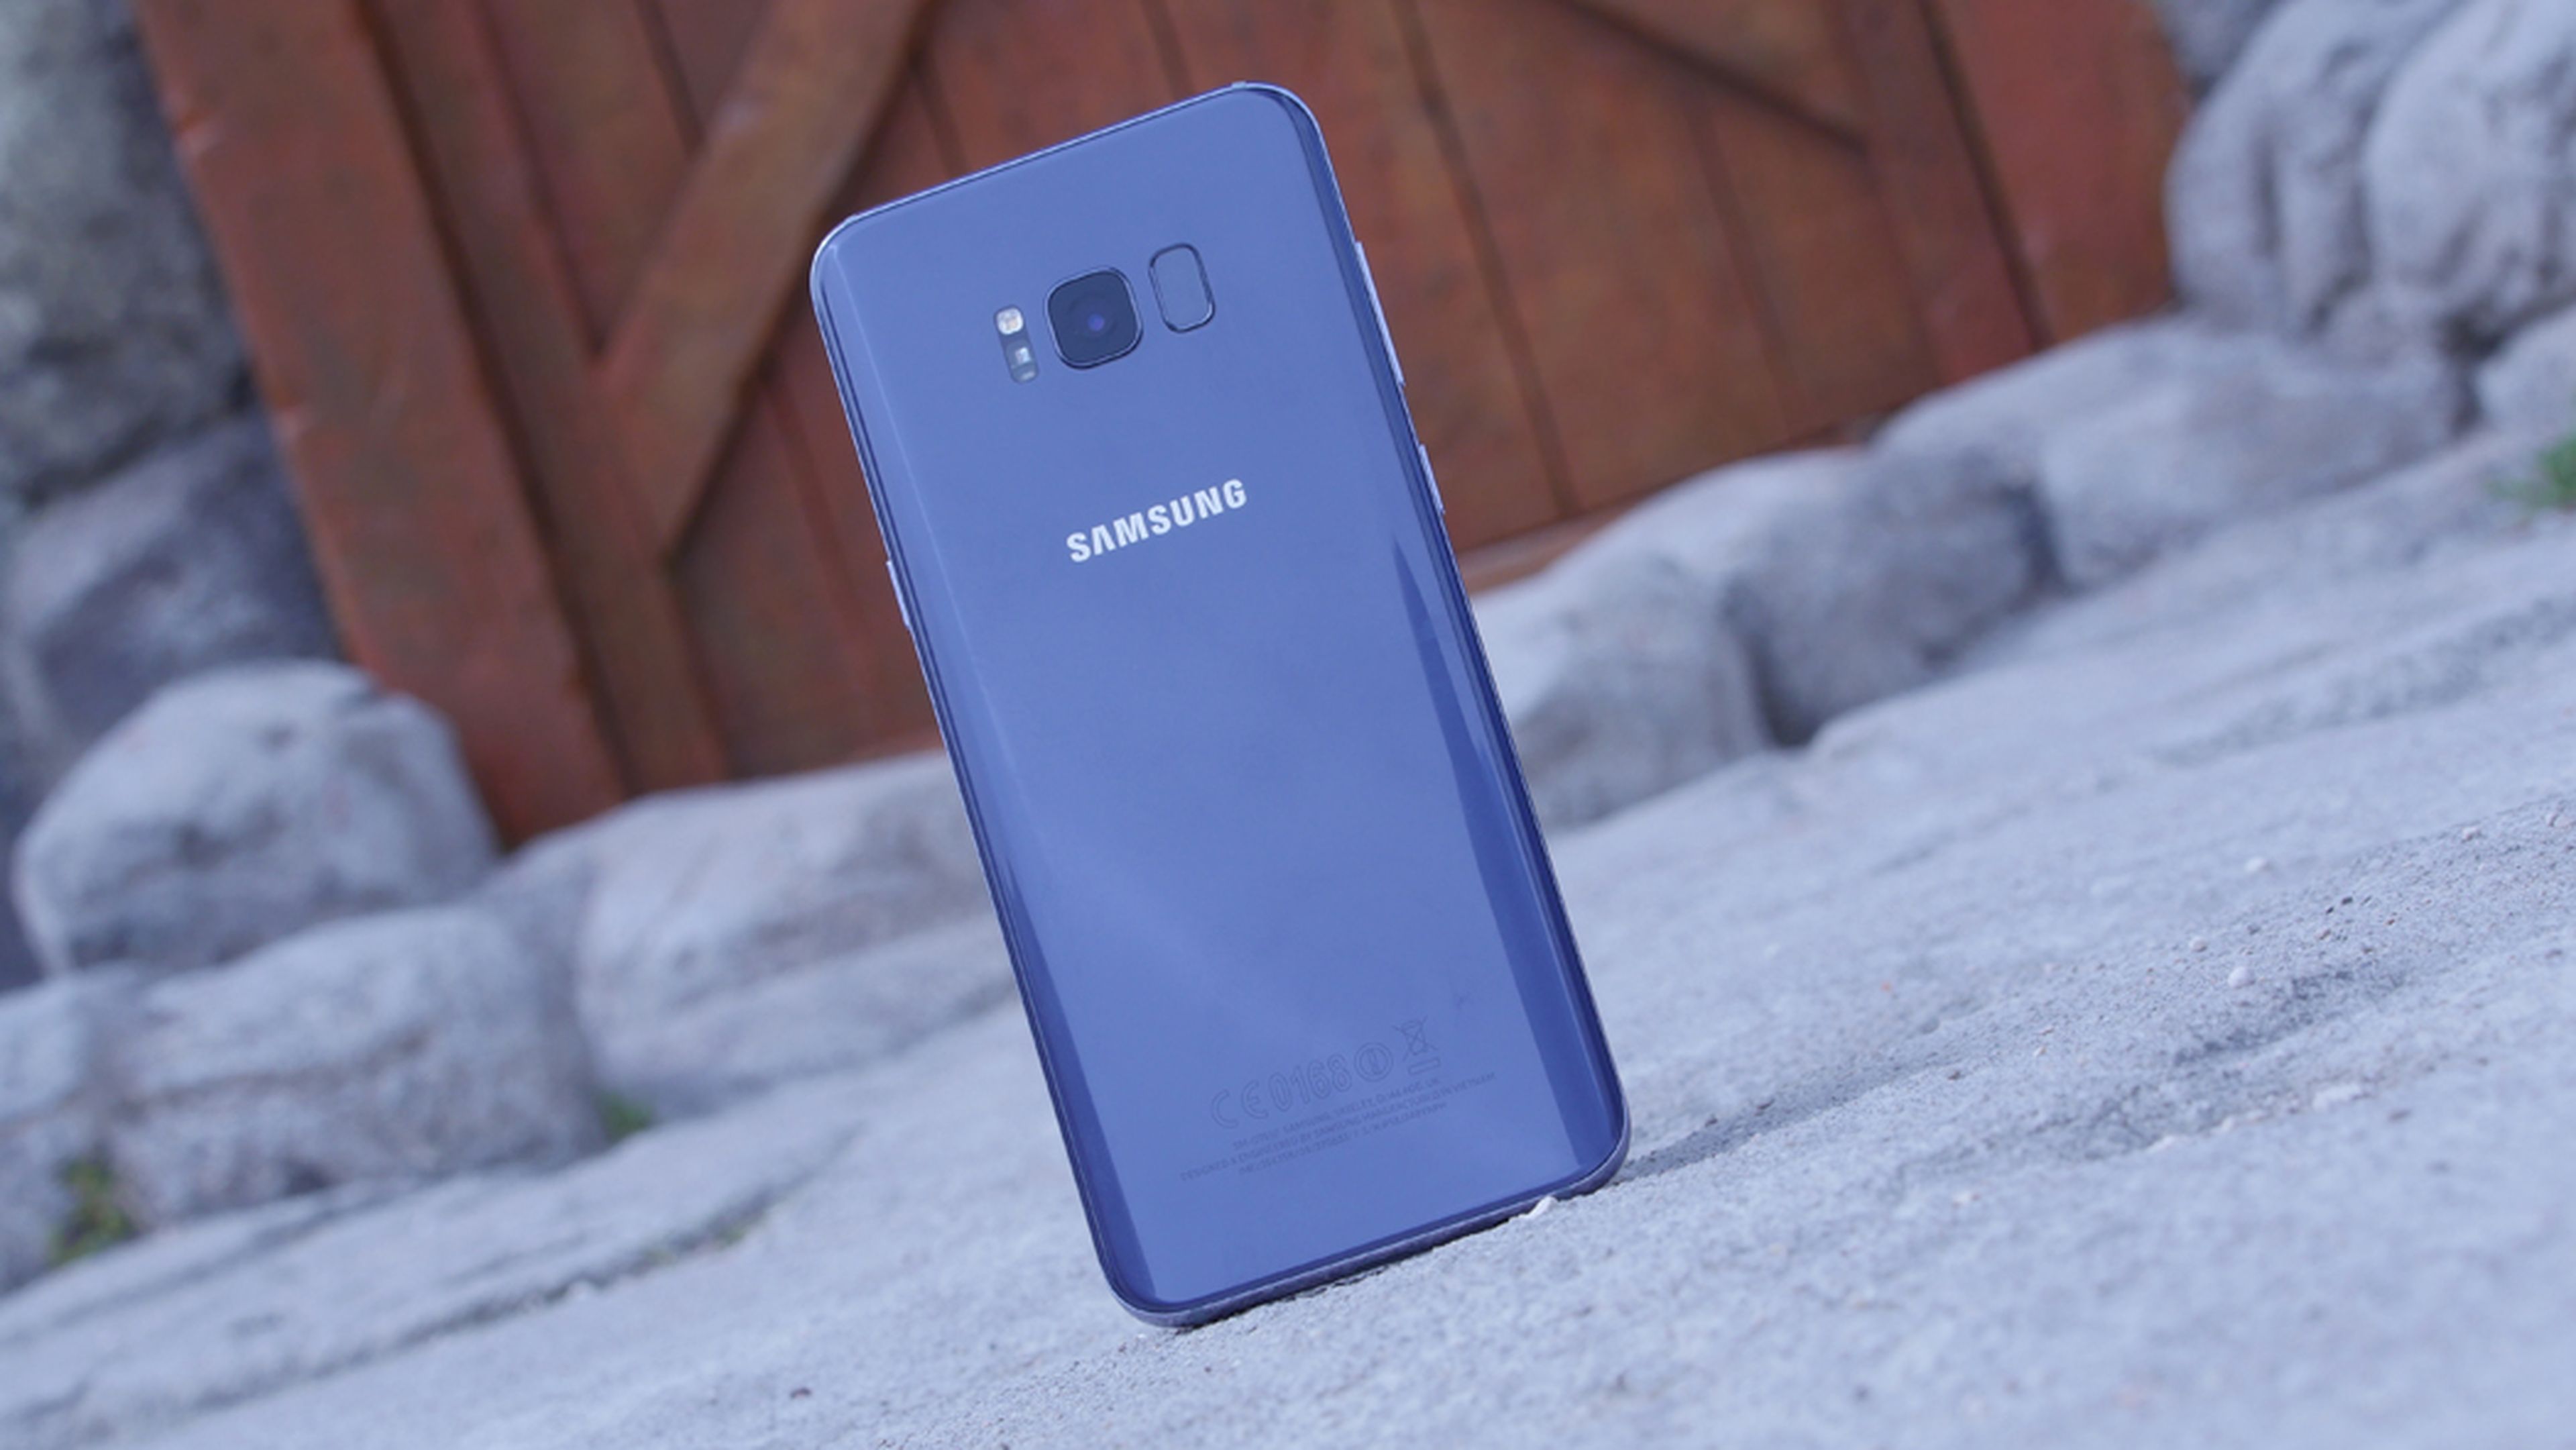 Diseño del Samsung Galaxy S8+: Fotos del móvil de gama alta